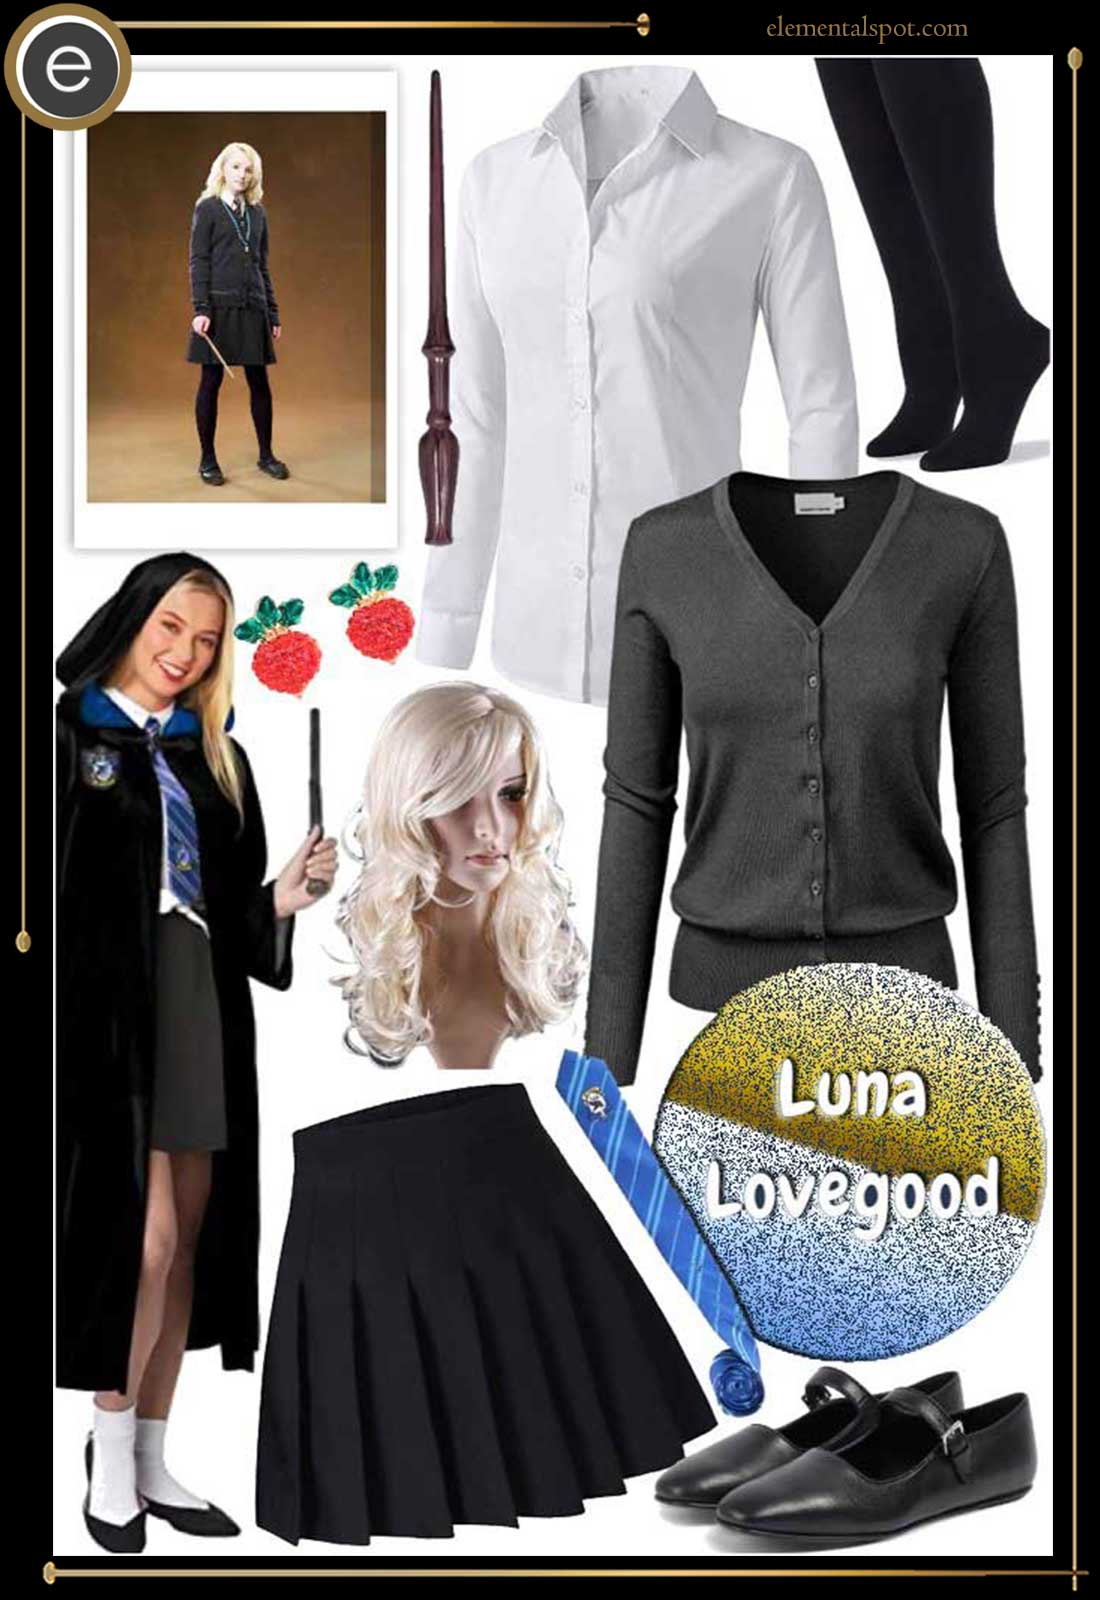 Dress Up Like Luna Lovegood From Harry Potter Elemental Spot 